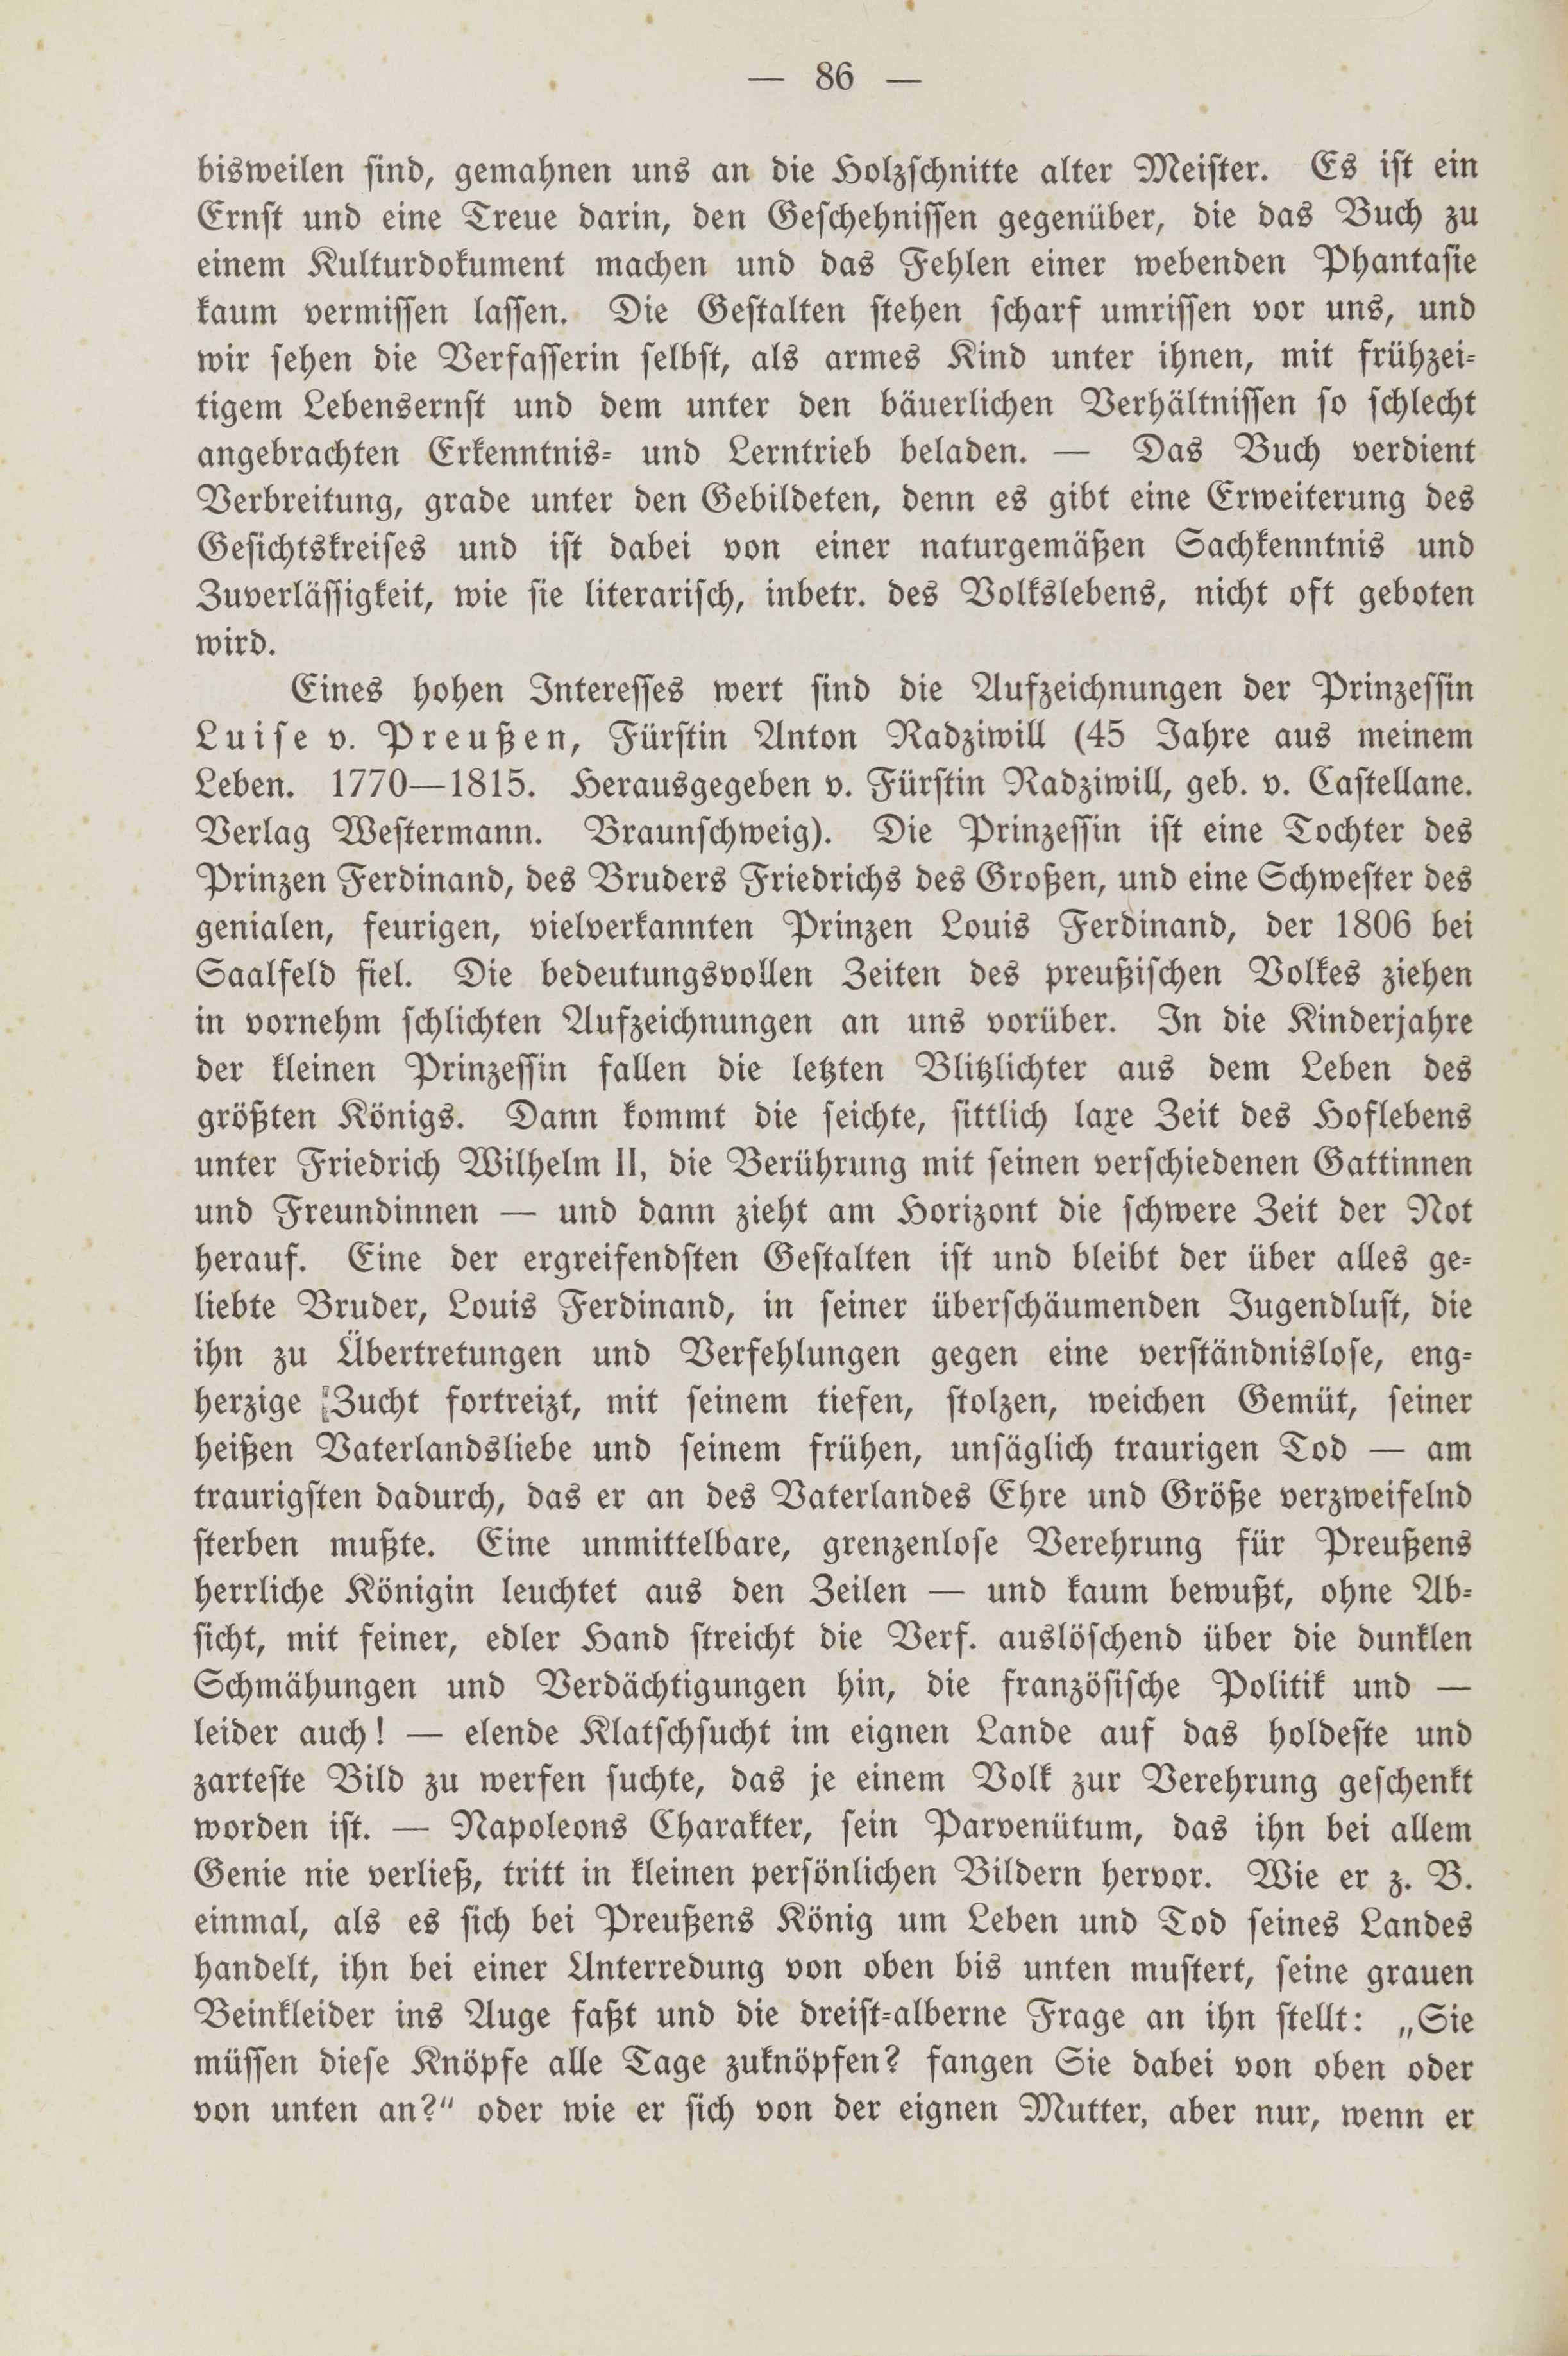 Deutsche Monatsschrift für Russland [2] (1913) | 90. (86) Haupttext